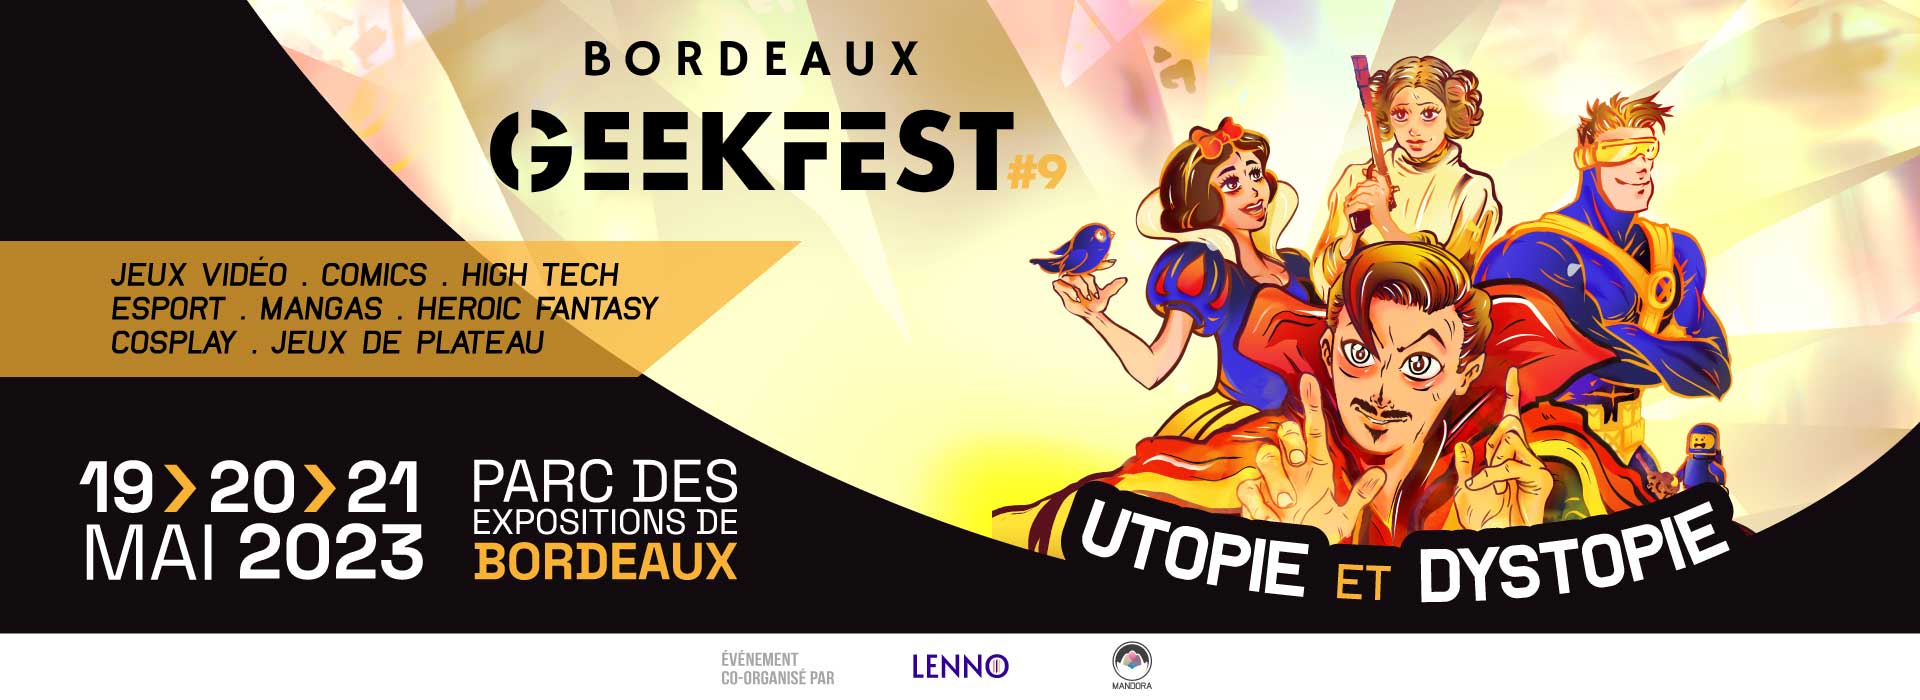 Bordeaux Geekfest - Festival Pop Culture - RDV les 19, 20 & 21 mai